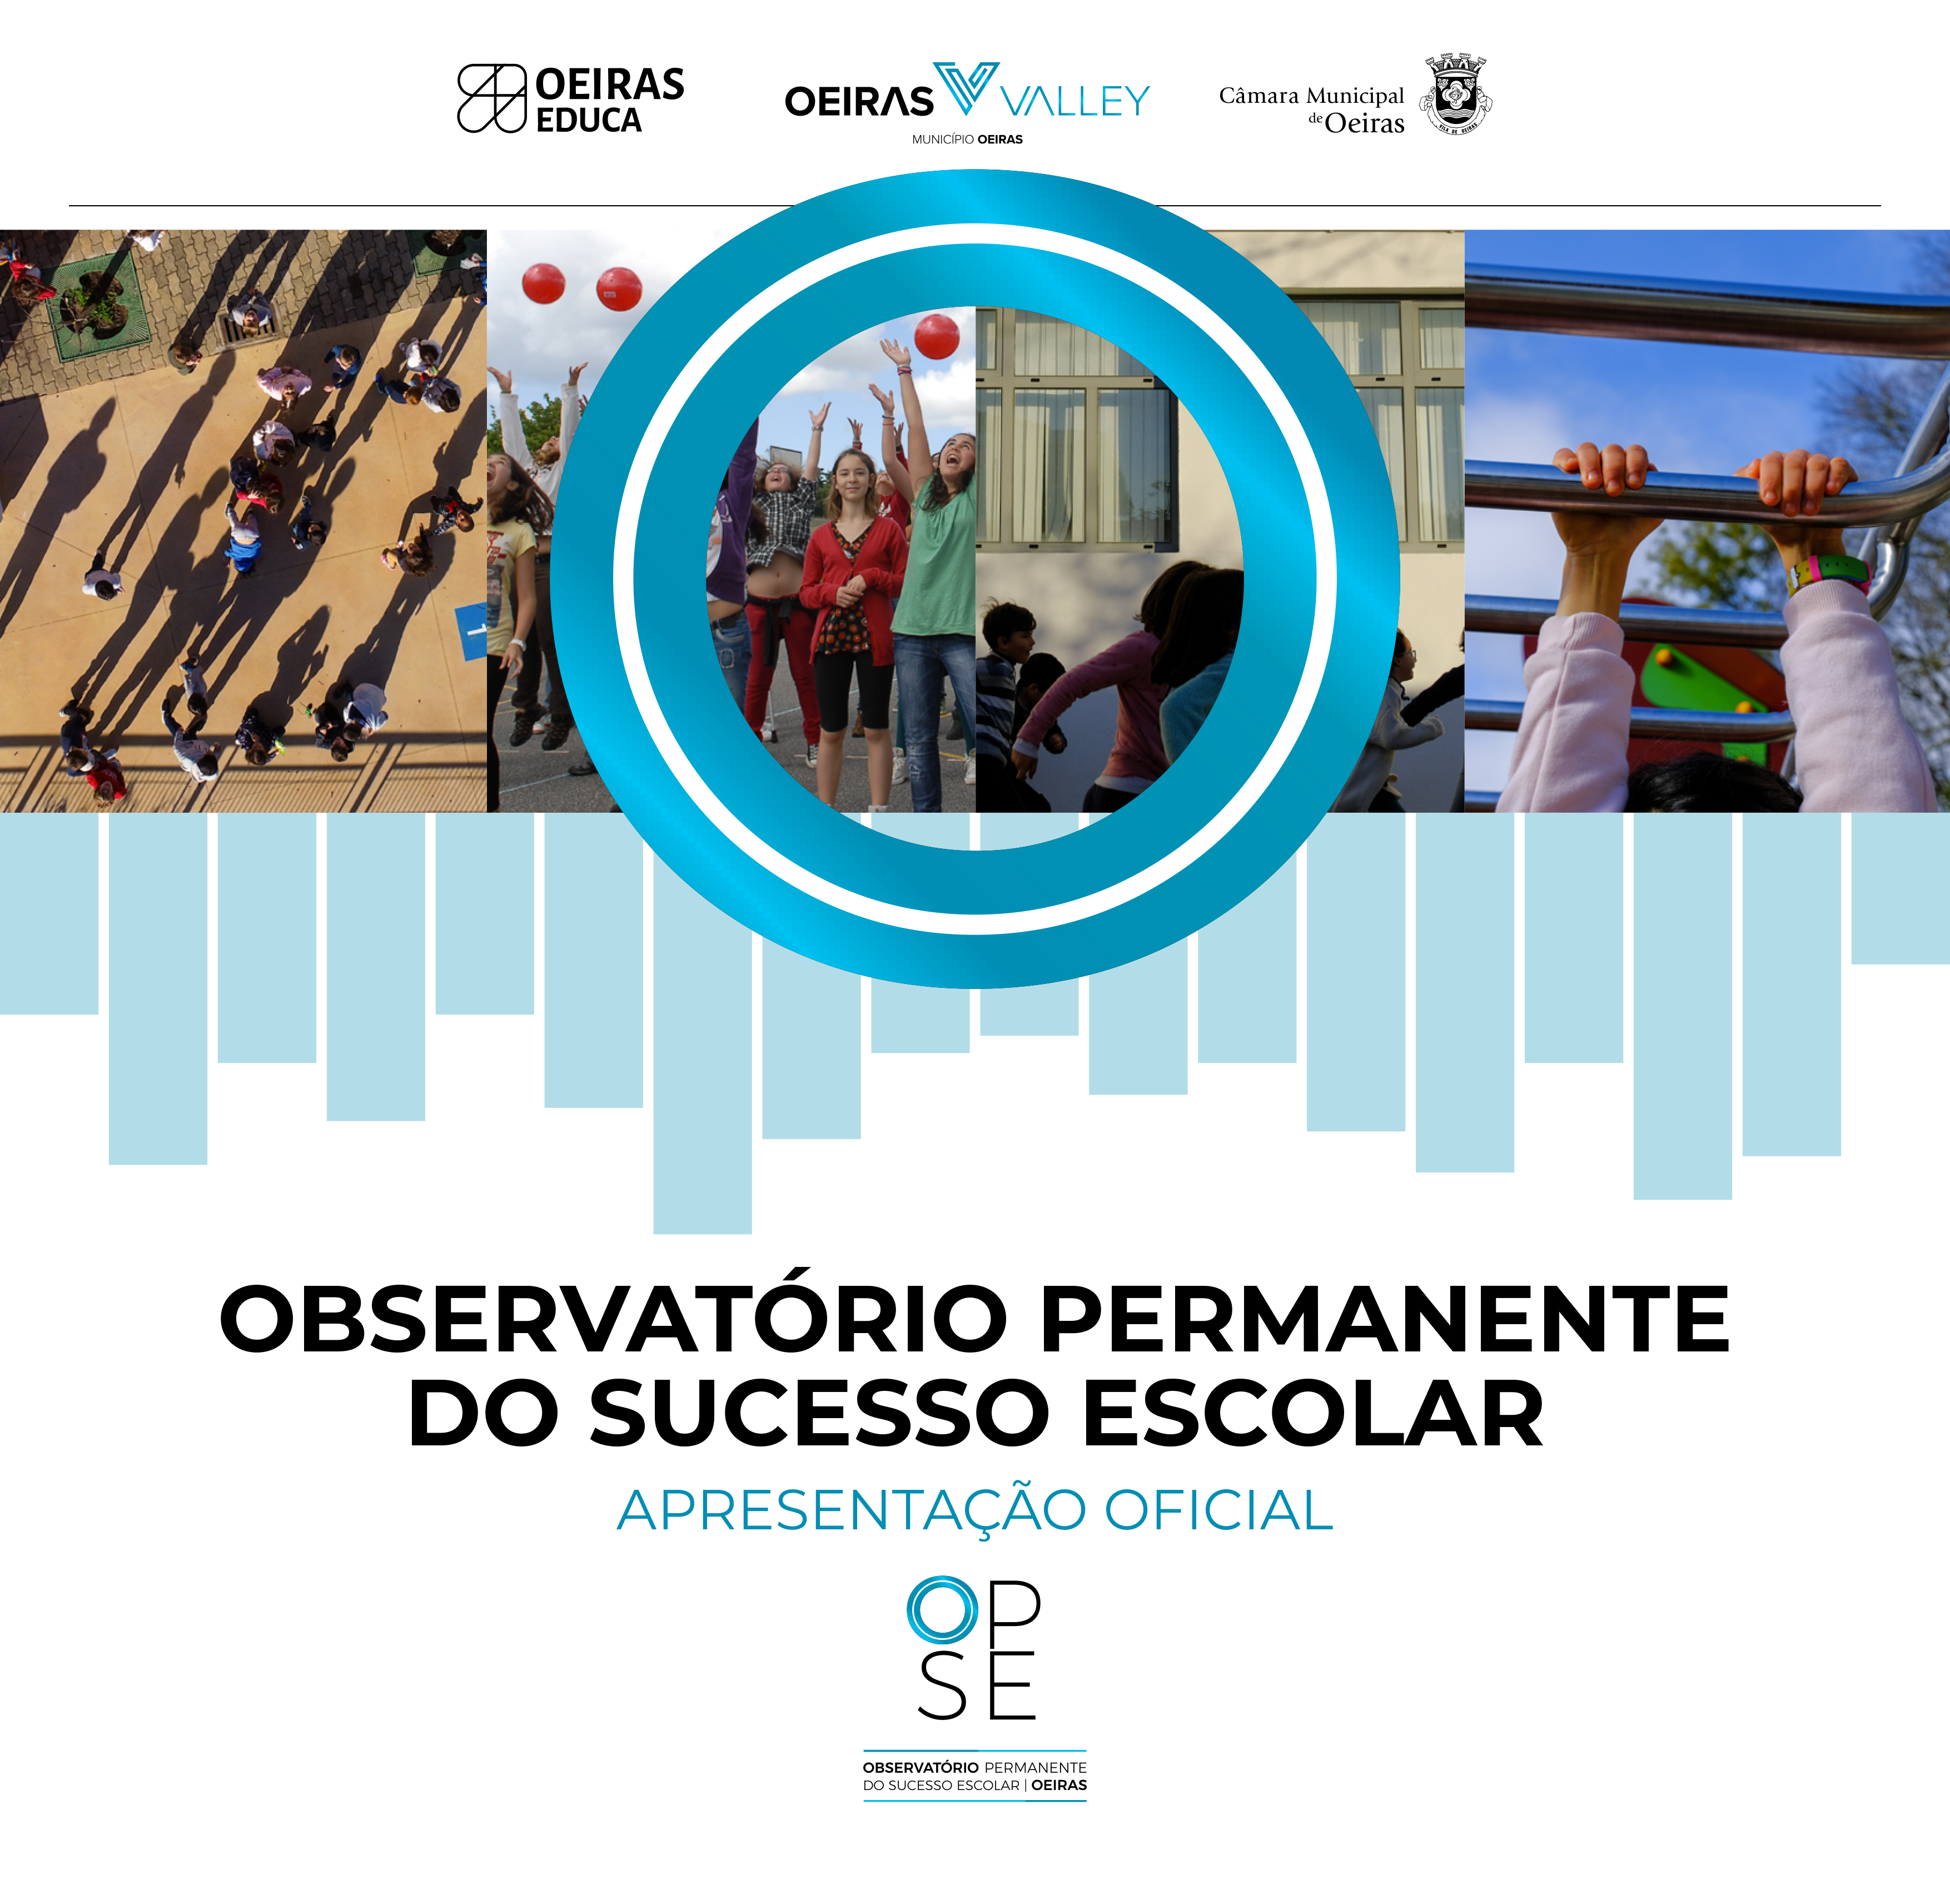 Apresentação oficial do Observatório Permanente do Sucesso Escolar – OPSE